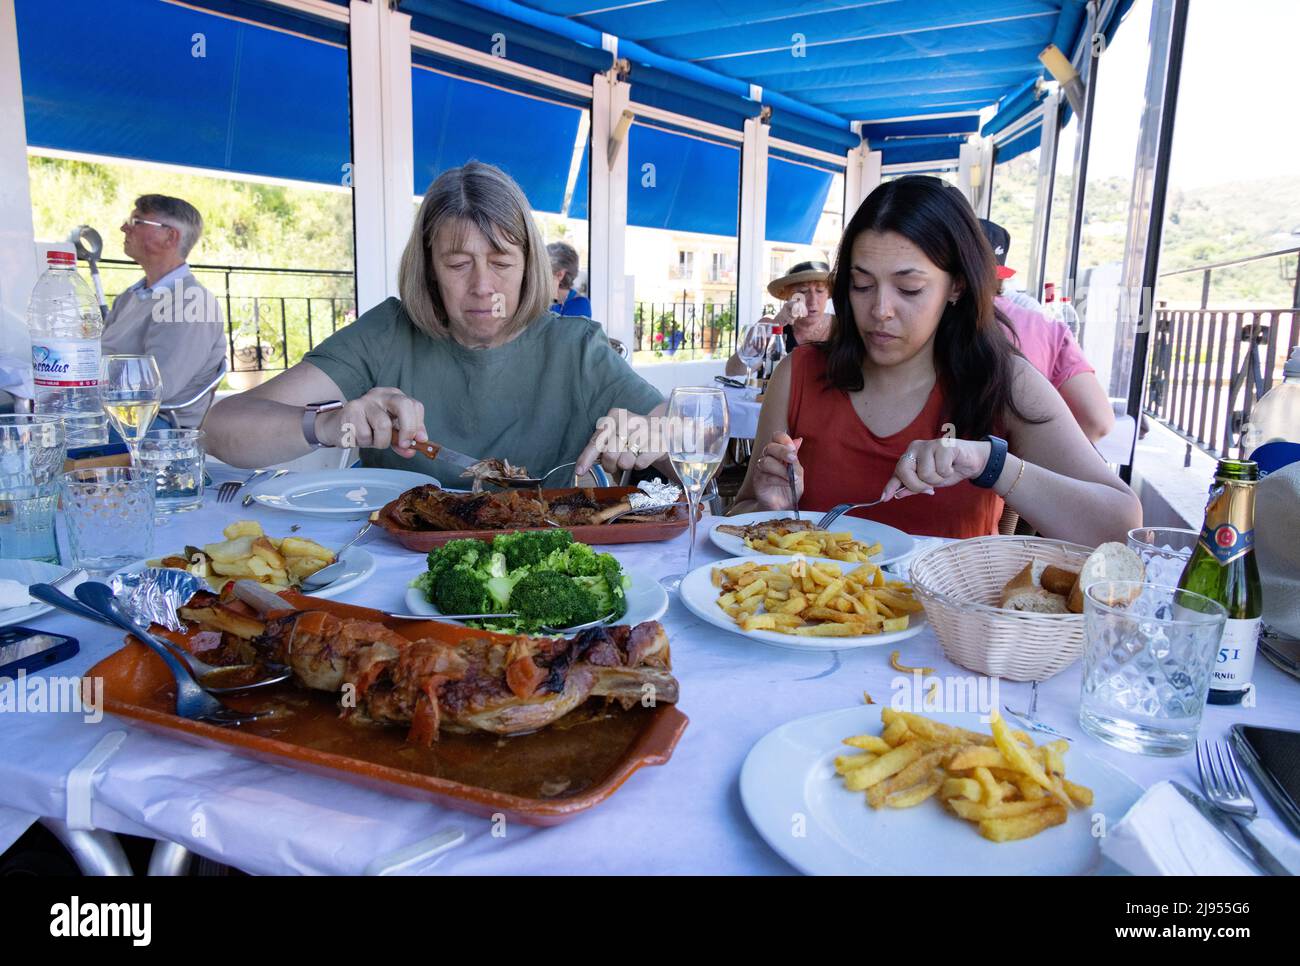 Spanisches Restaurant; zwei Frauen, die tagsüber in einem Restaurant Fleisch essen, Andalusien, Spanien, Europa Stockfoto